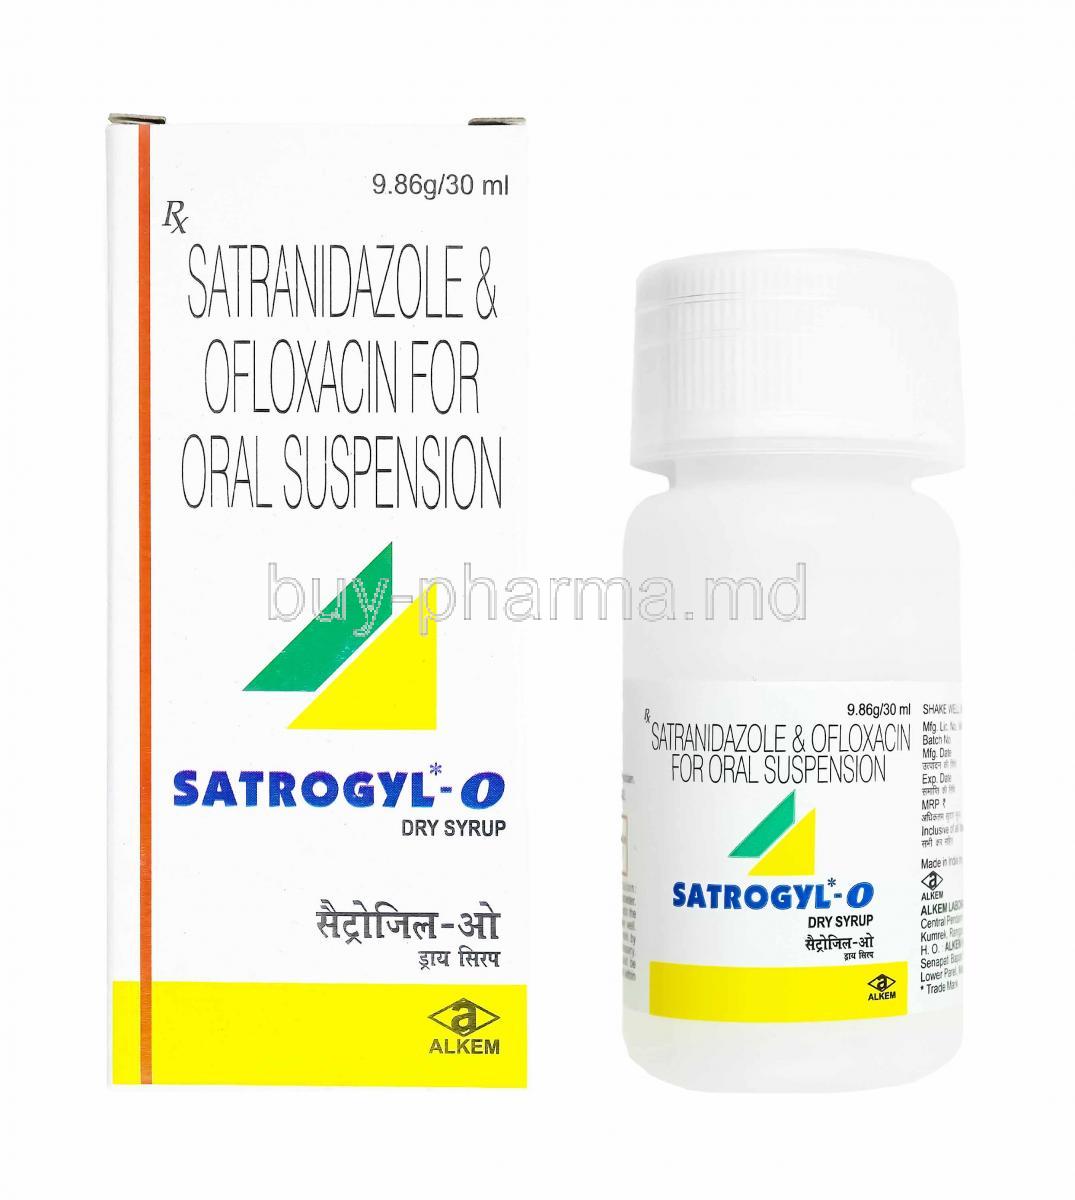 Satrogyl-O Oral Suspension, Satranidazole and Ofloxacin box, bottle